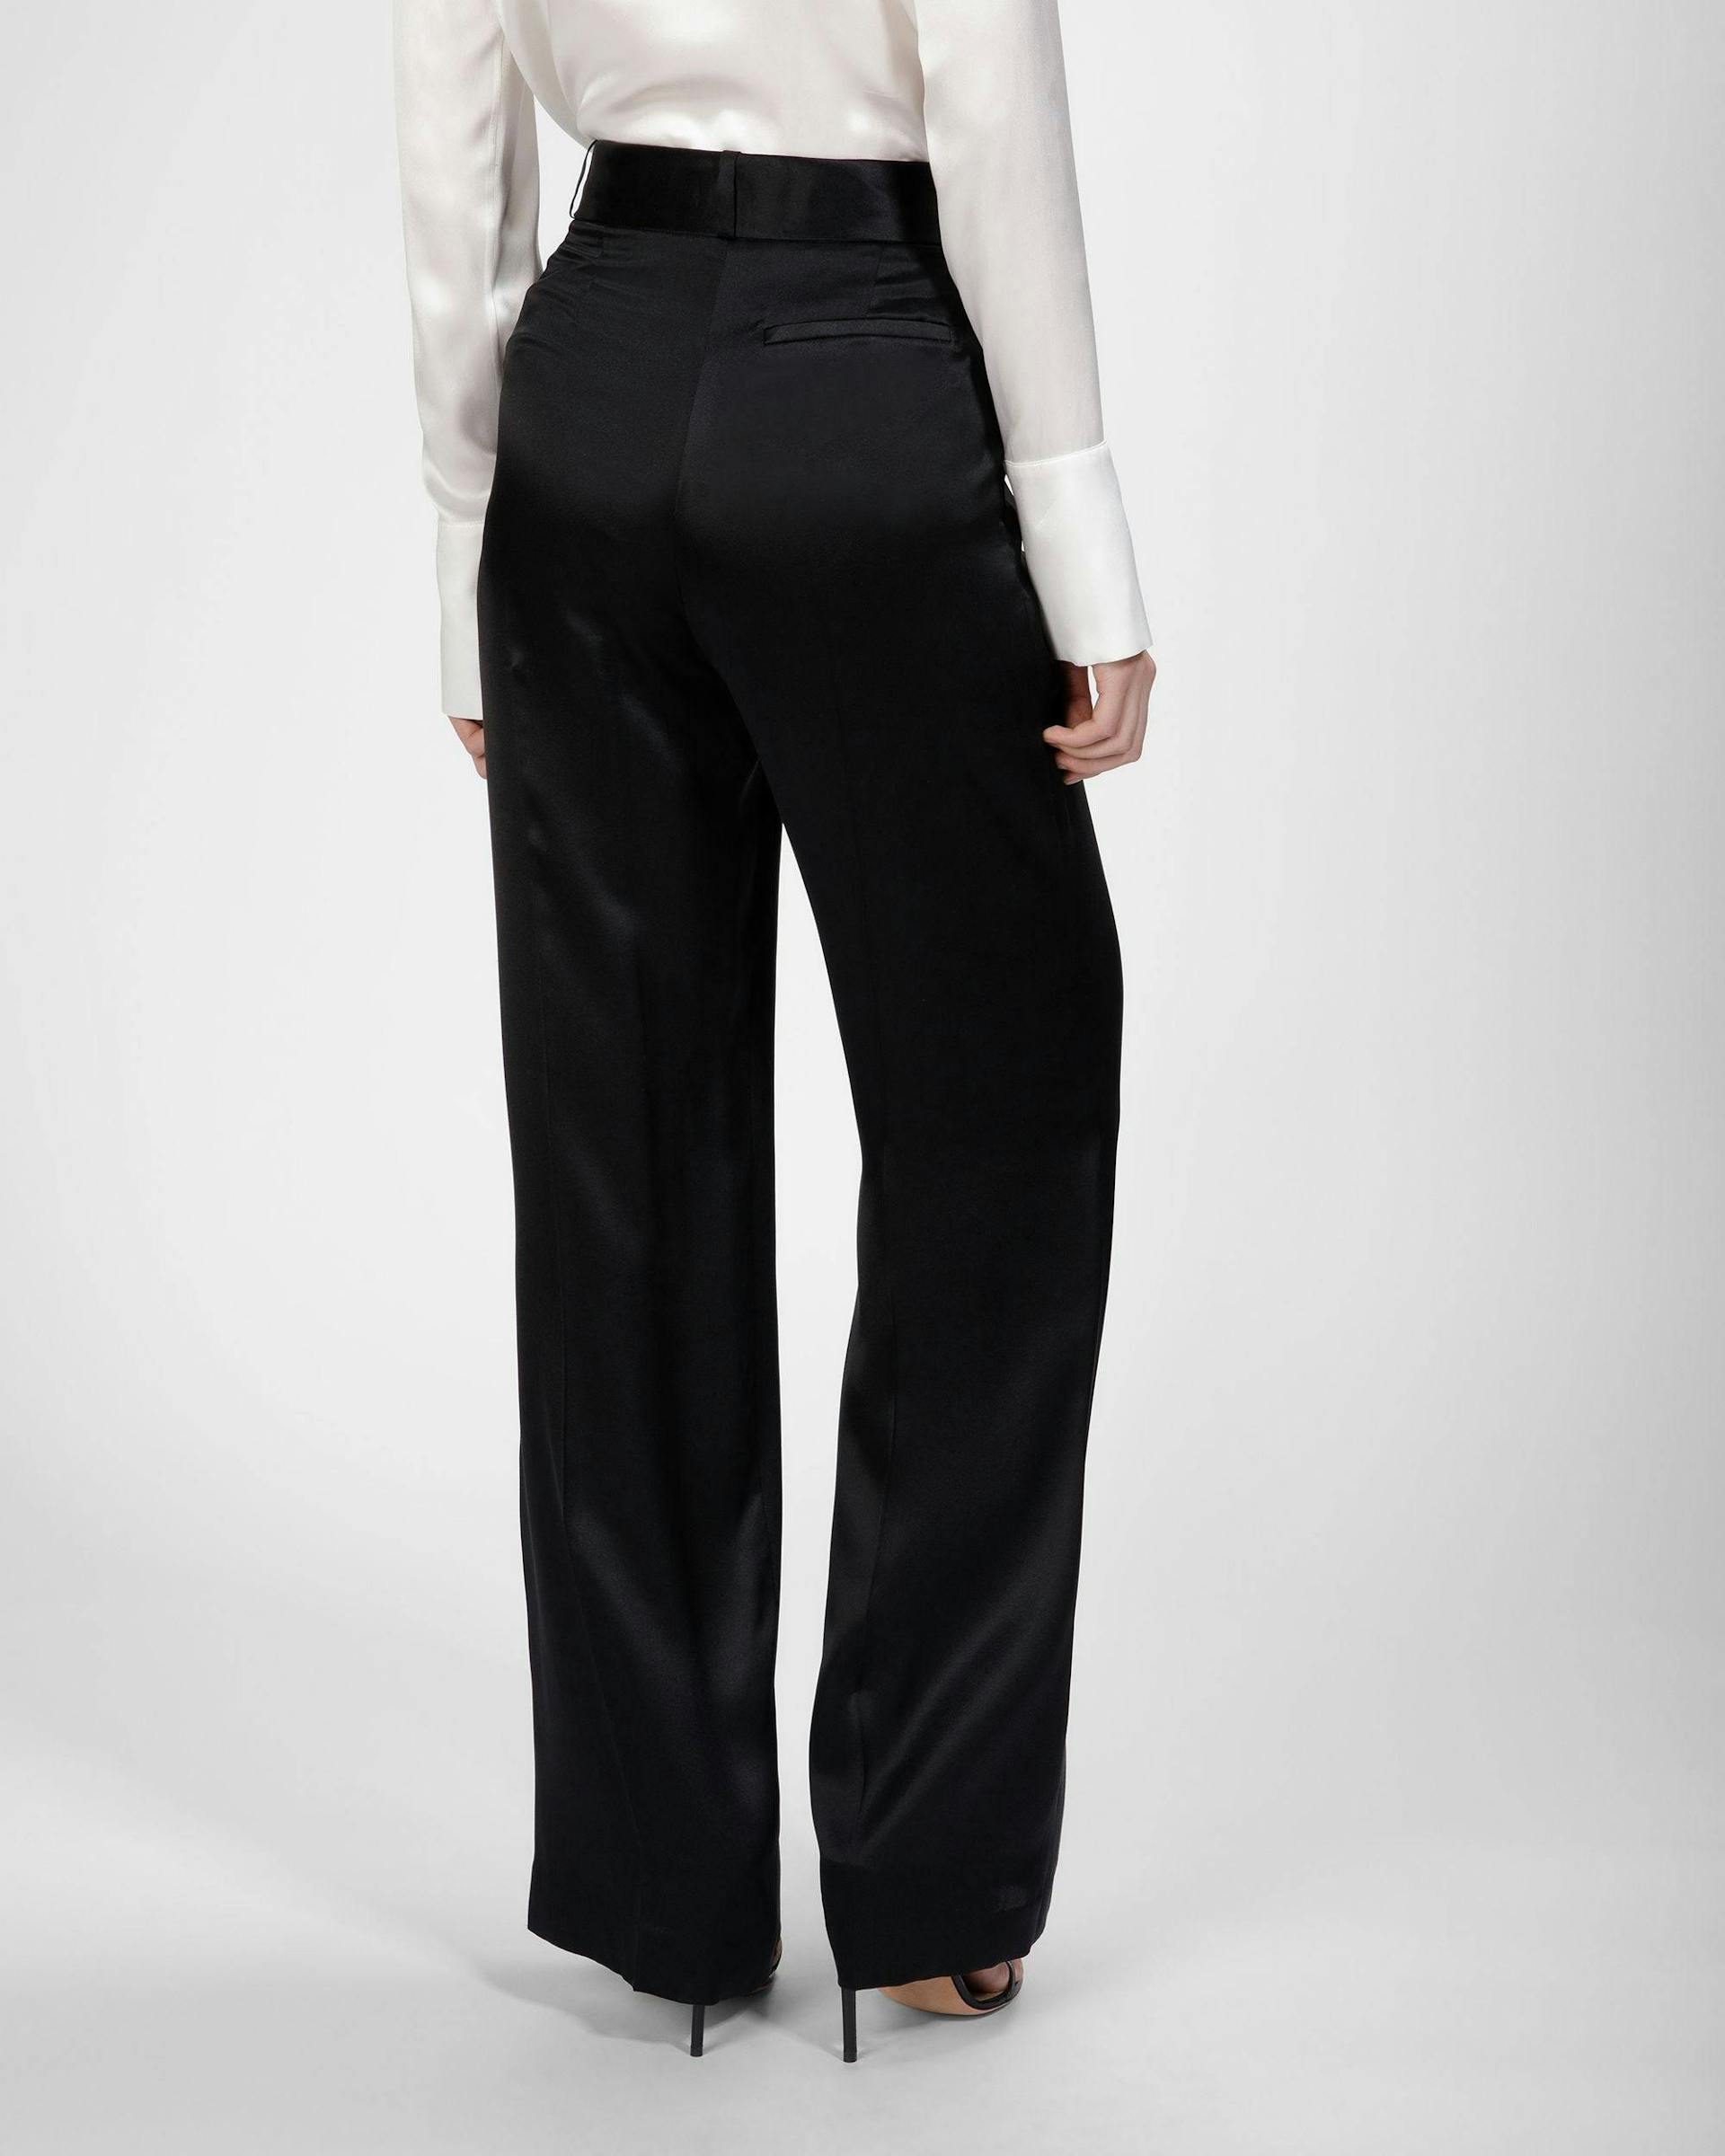 Silk Pants In Black - Women's - Bally - 05